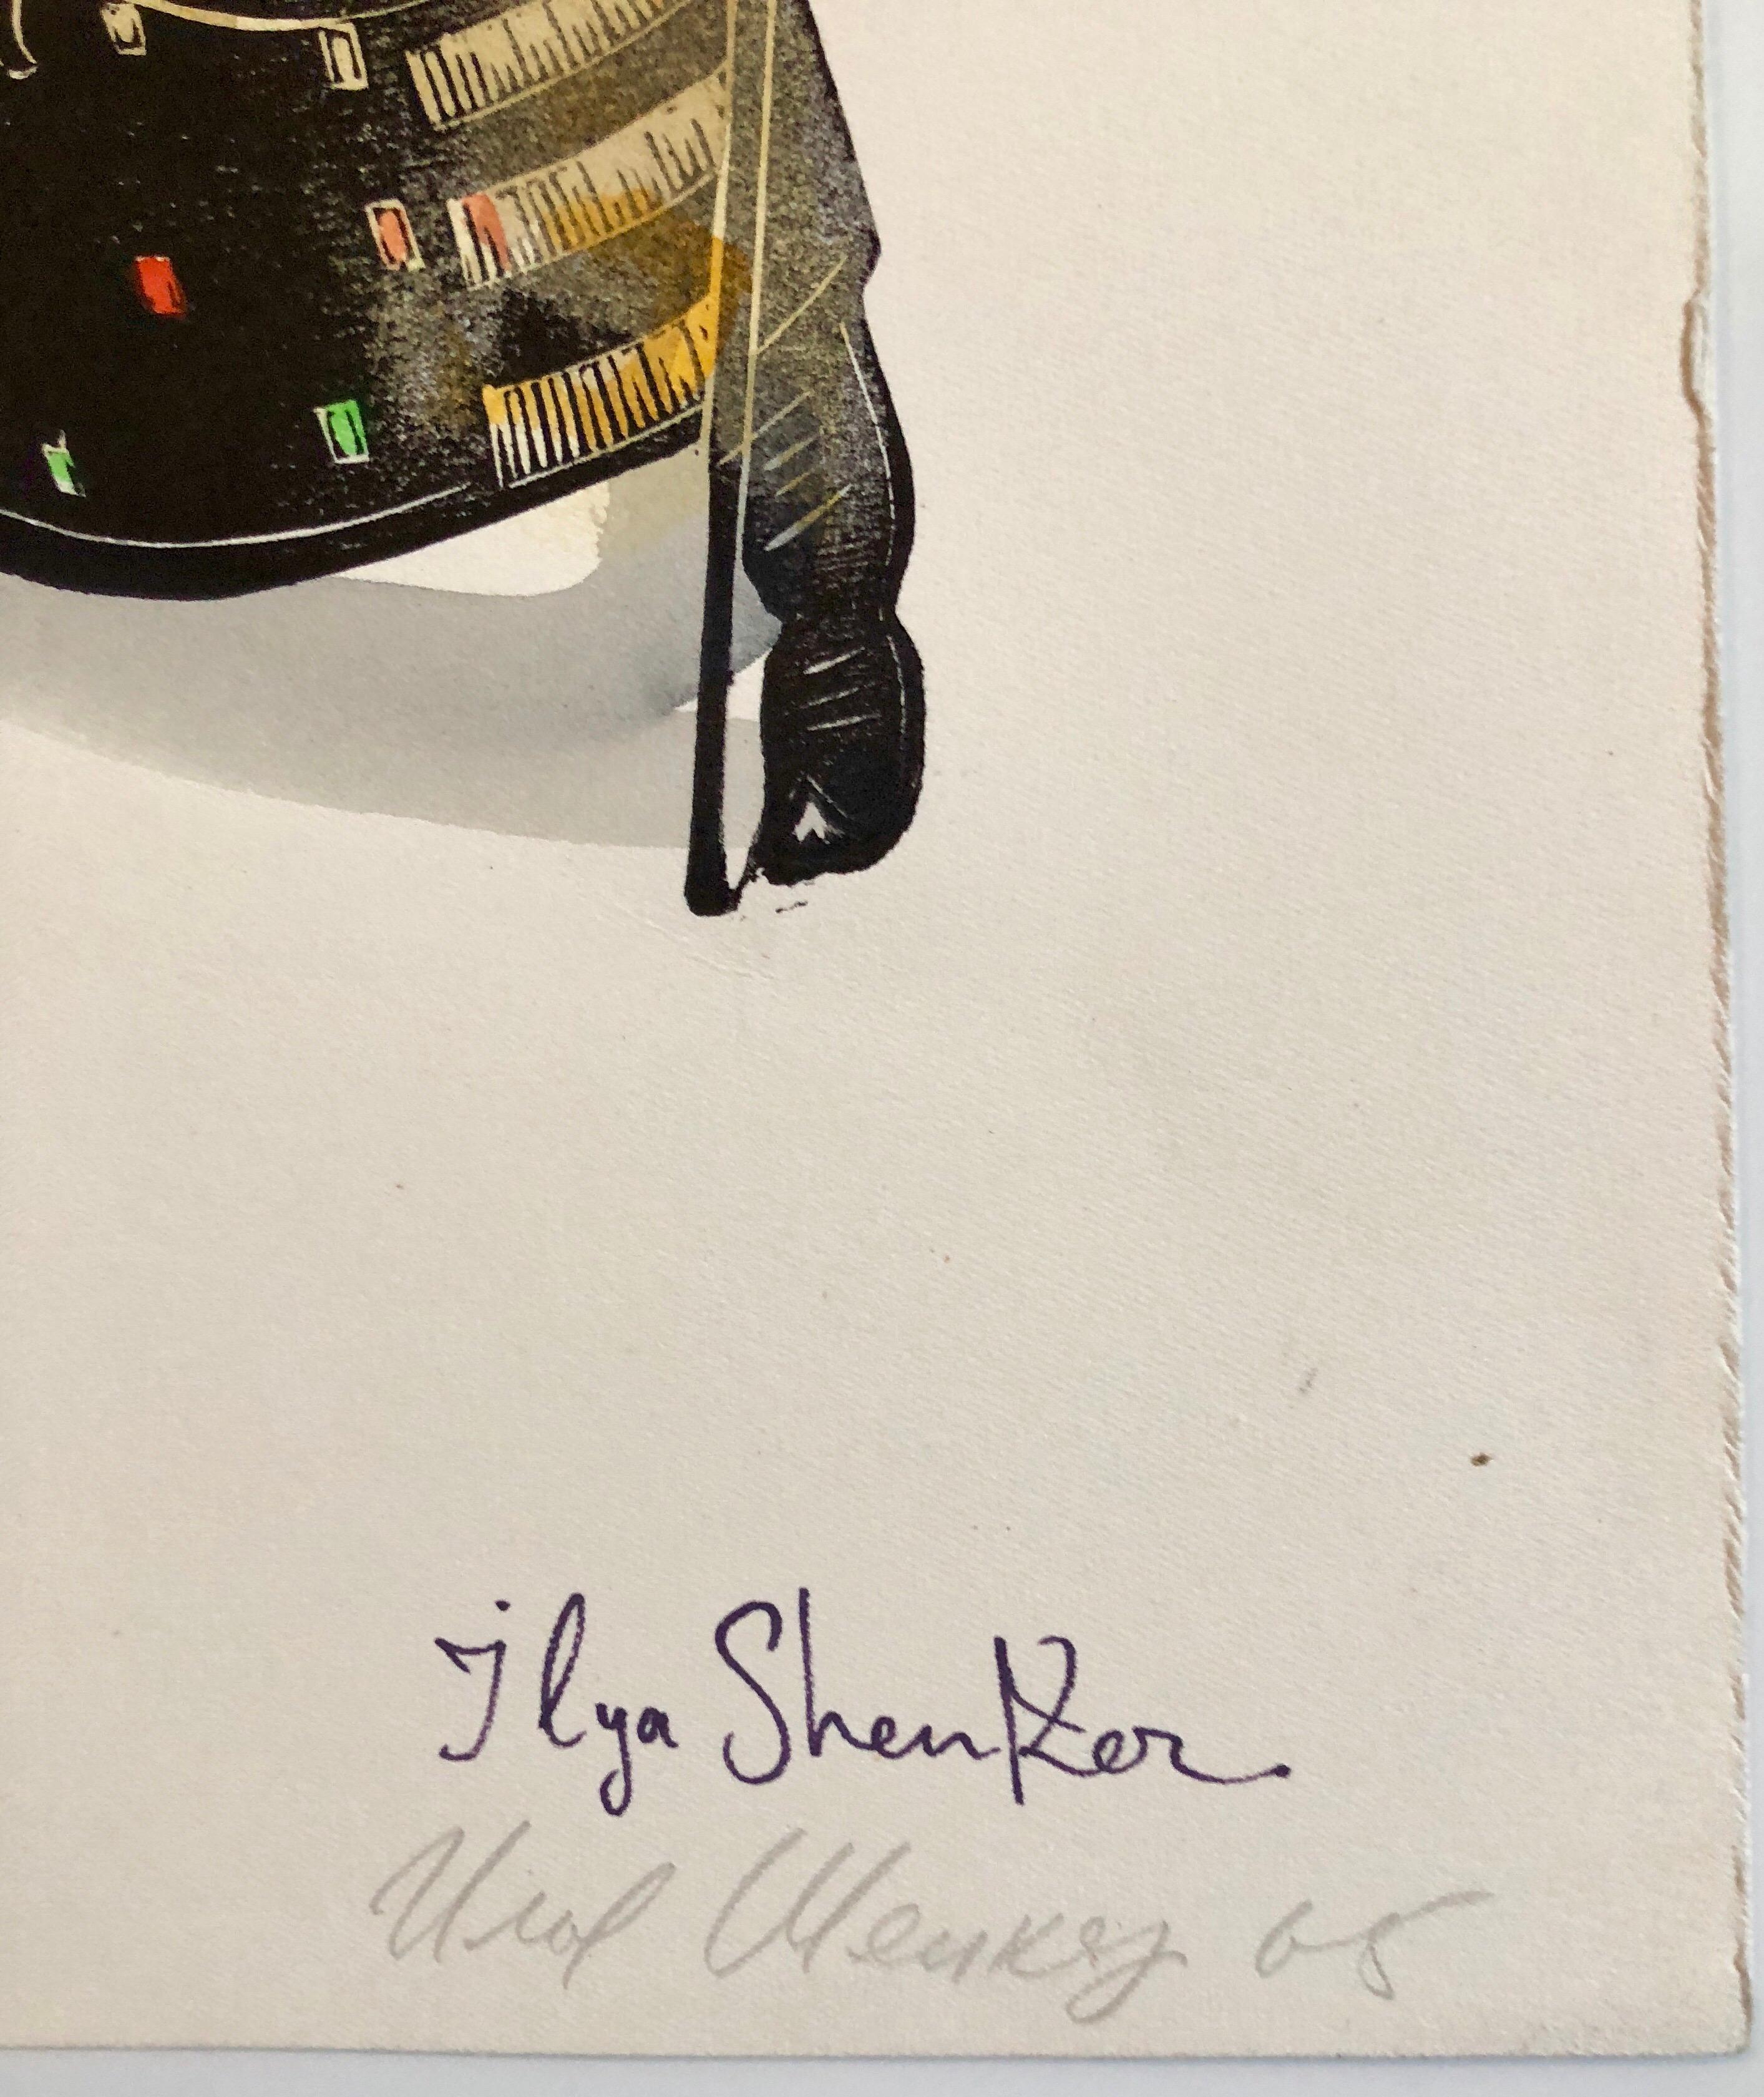  Es zeigt eine Hochzeitsszene im Stil des deutschen Expressionismus. Handsigniert und handgemalt in Aquarell. 
Ilya Shenker, Russisch/Amerikanisch (1922 - )
Als Soldat im Zweiten Weltkrieg überlebte er, während Millionen von Menschen starben. Als er